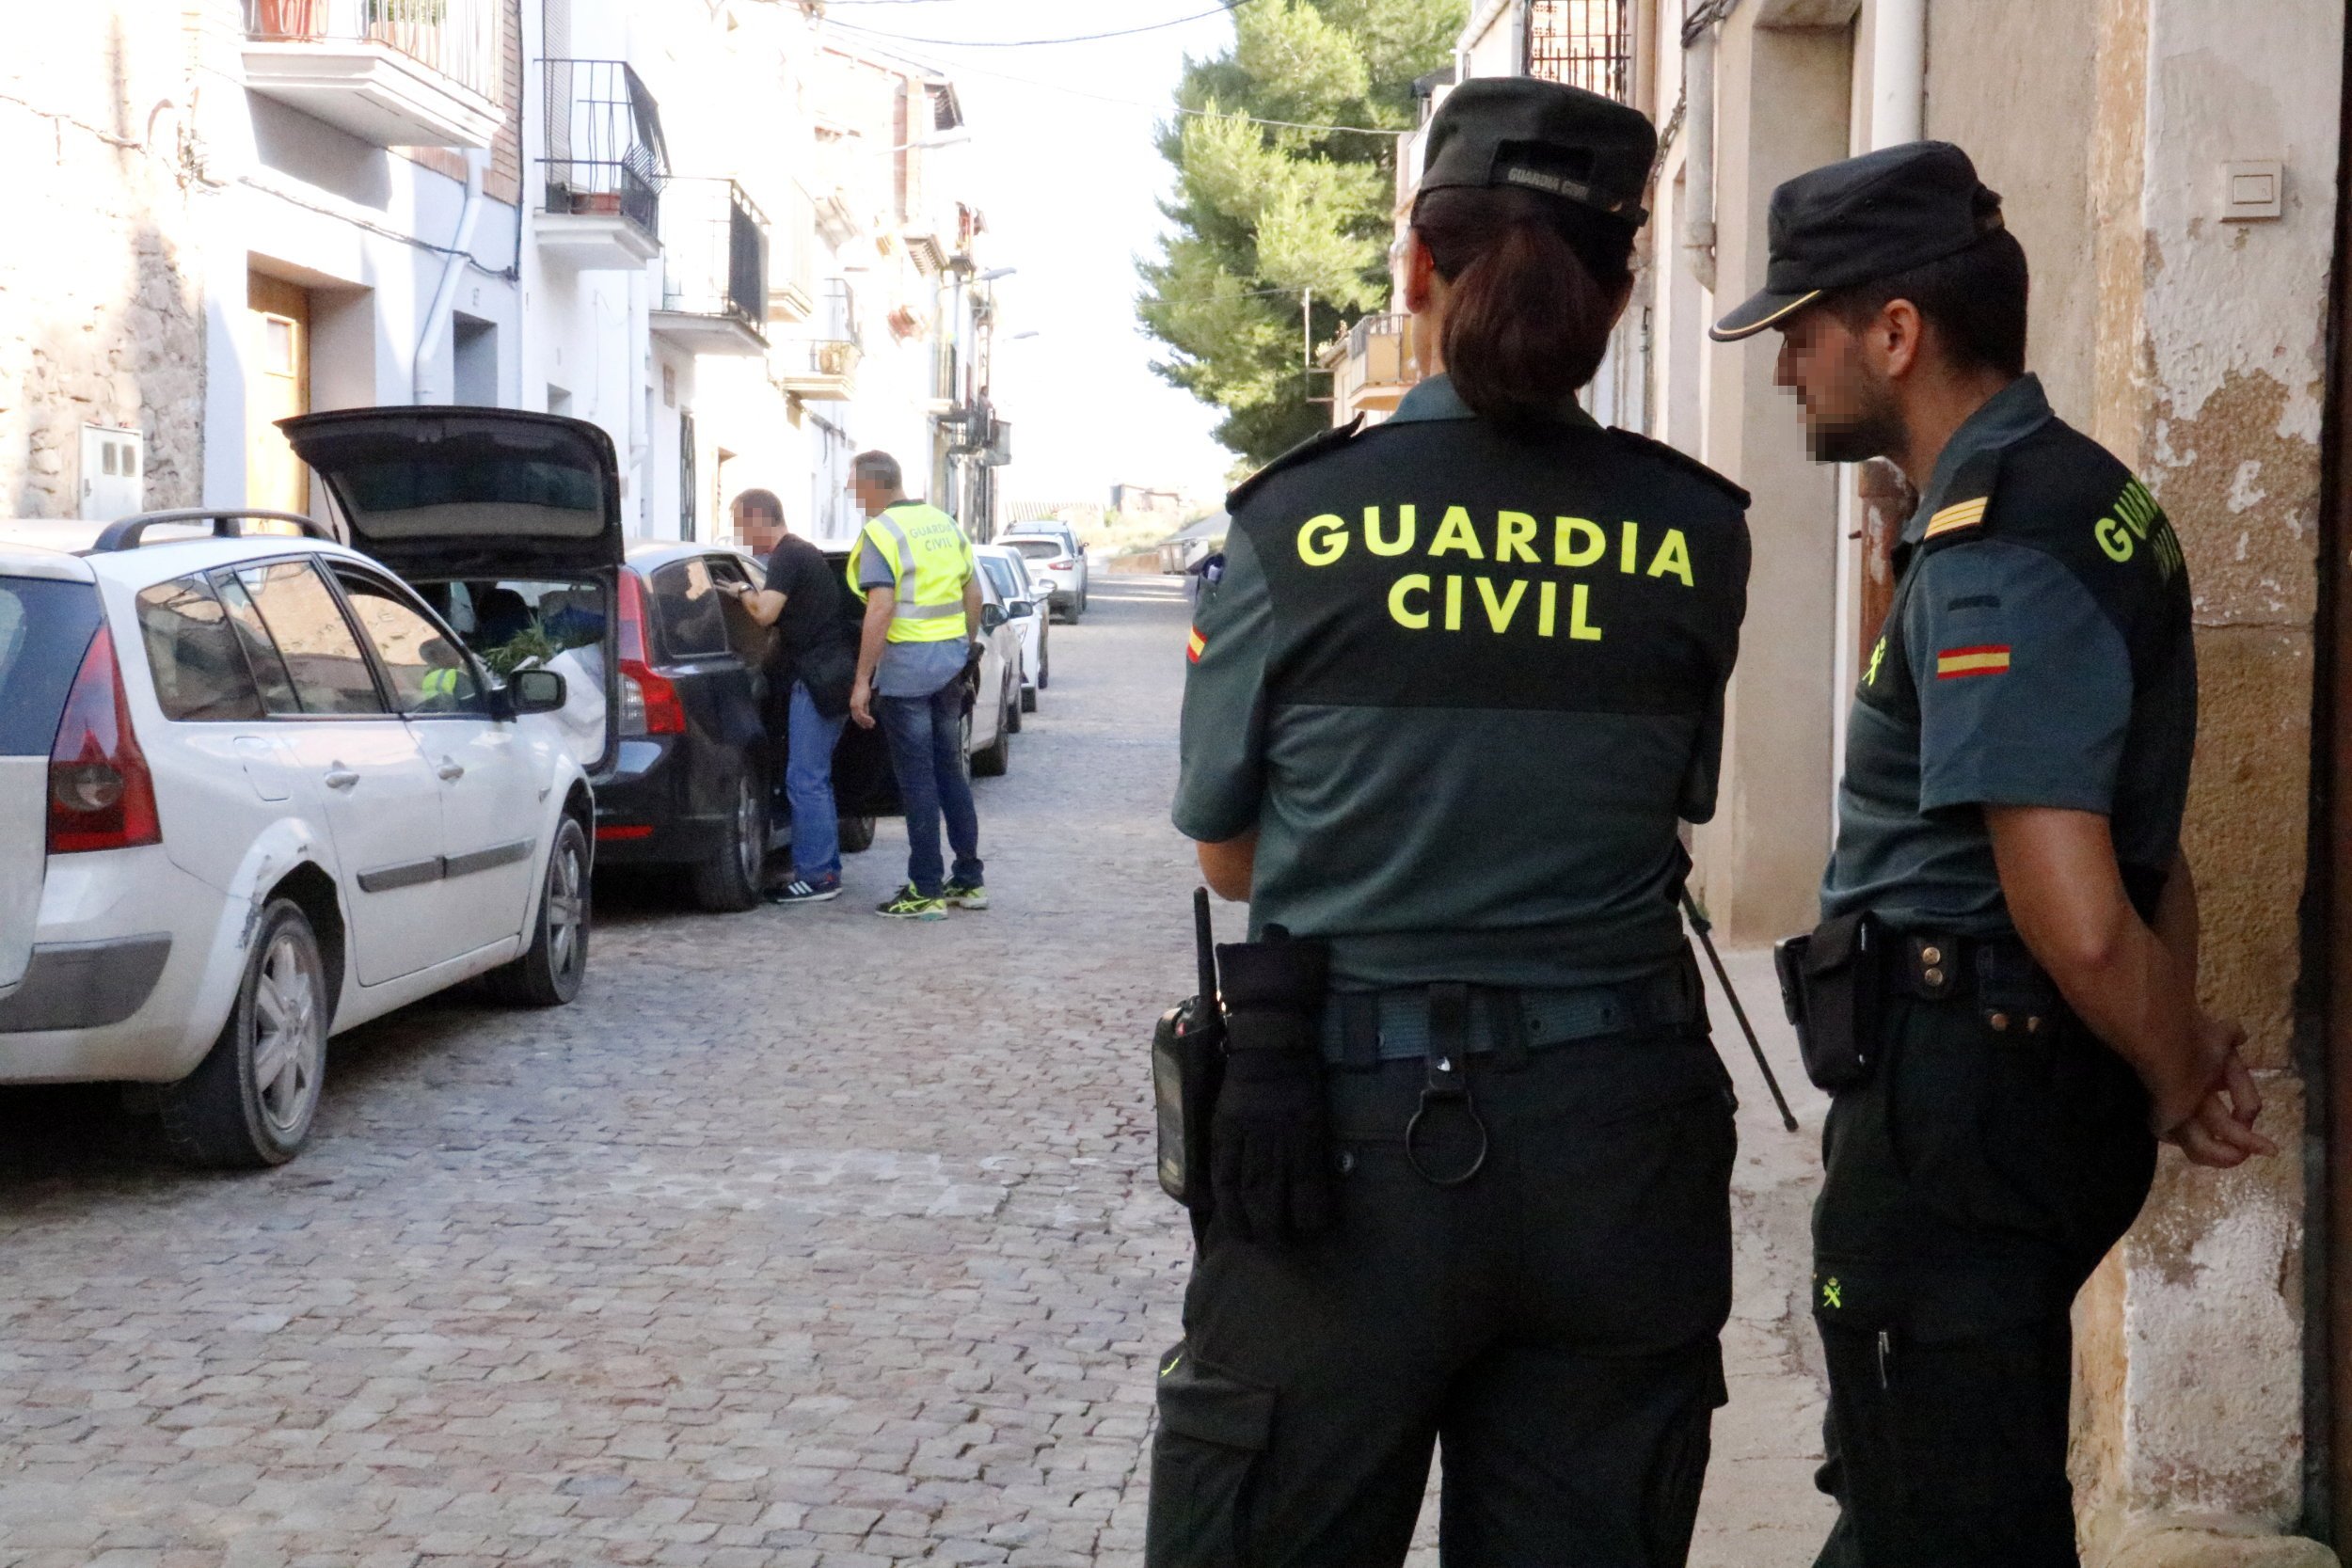 Una associació de guàrdies civils treu pit amb el Prat perquè se'ls vol "fer fora de Catalunya"